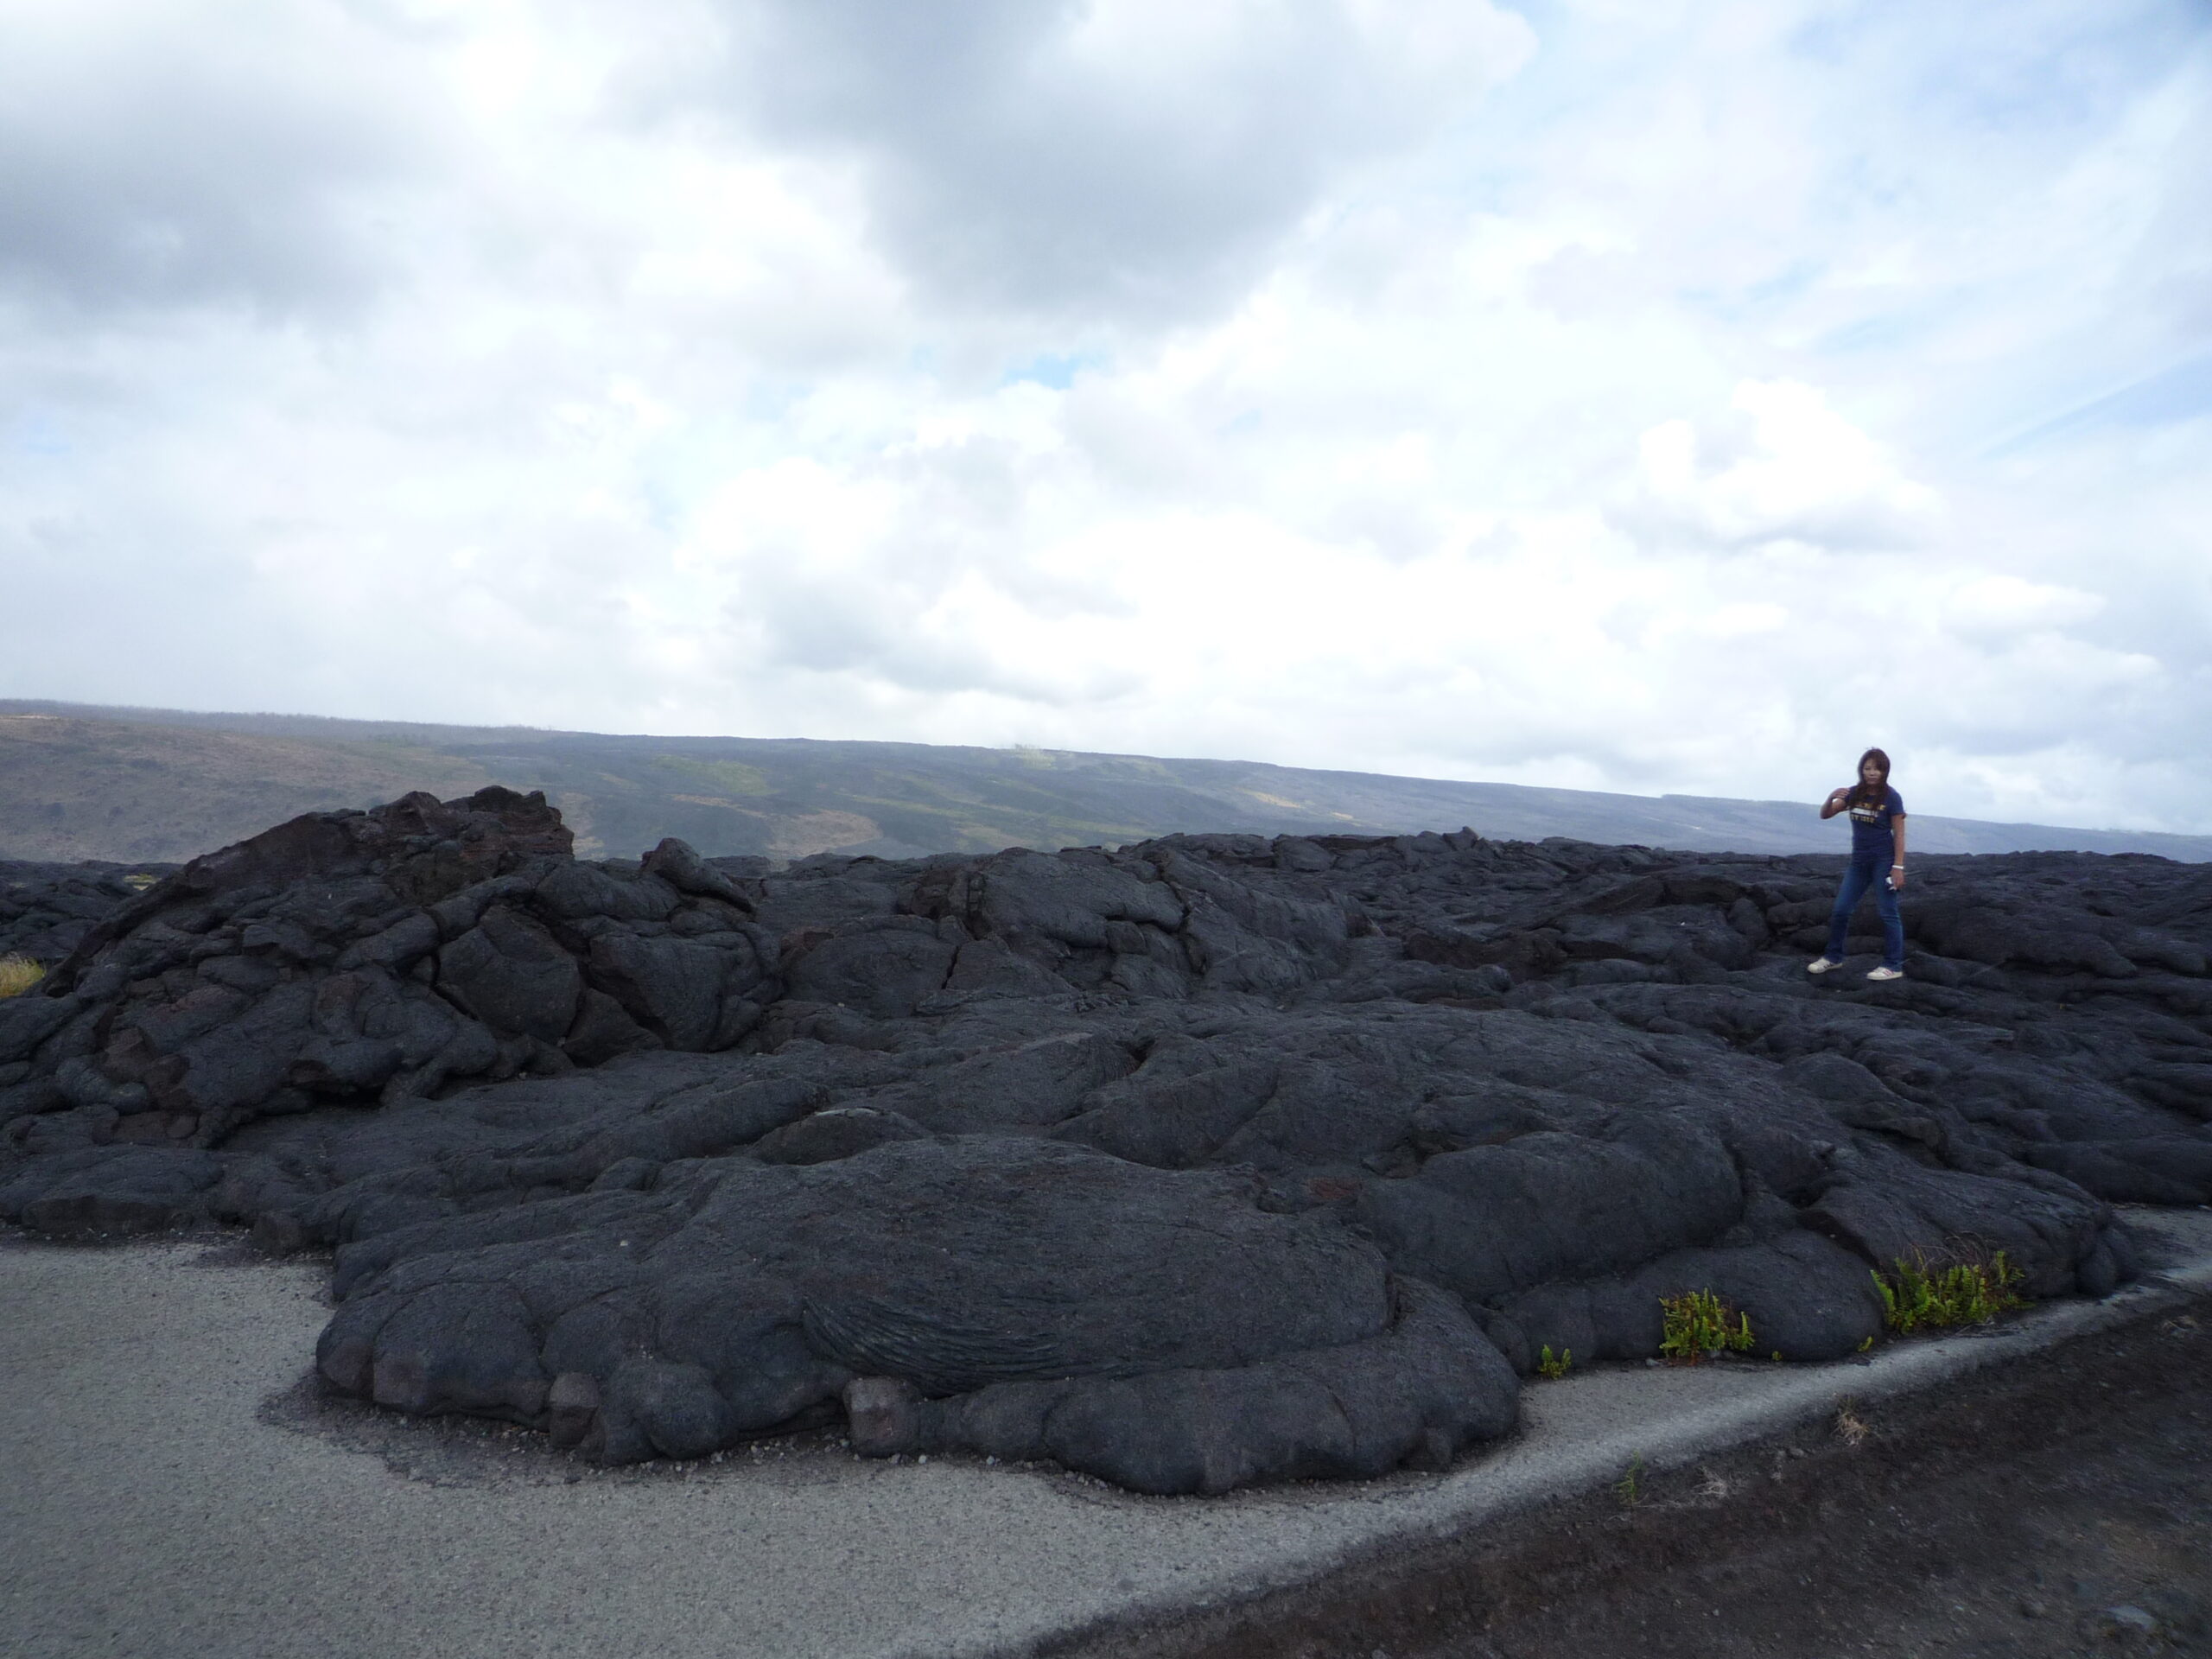 ハワイ火山国立公園